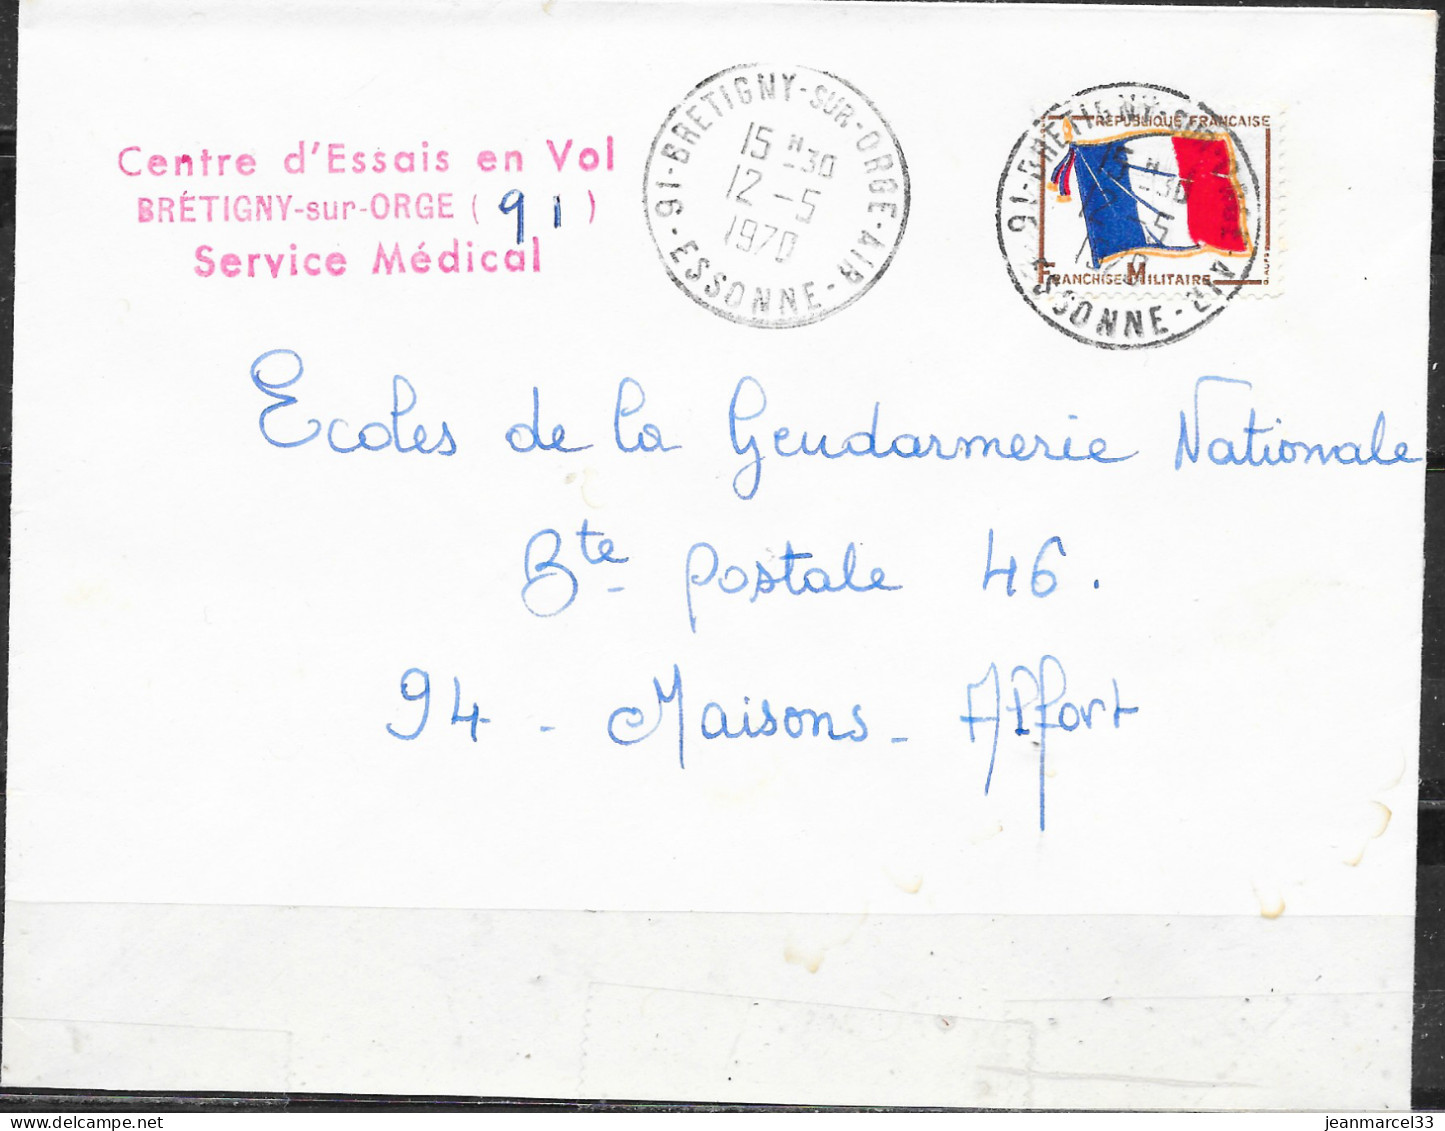 Cachet Manuel 91-Bretigny-sur-Orge-Air I2-5 I970 Sur Timbre FM Drapeau Tricolore - Poste Aérienne Militaire